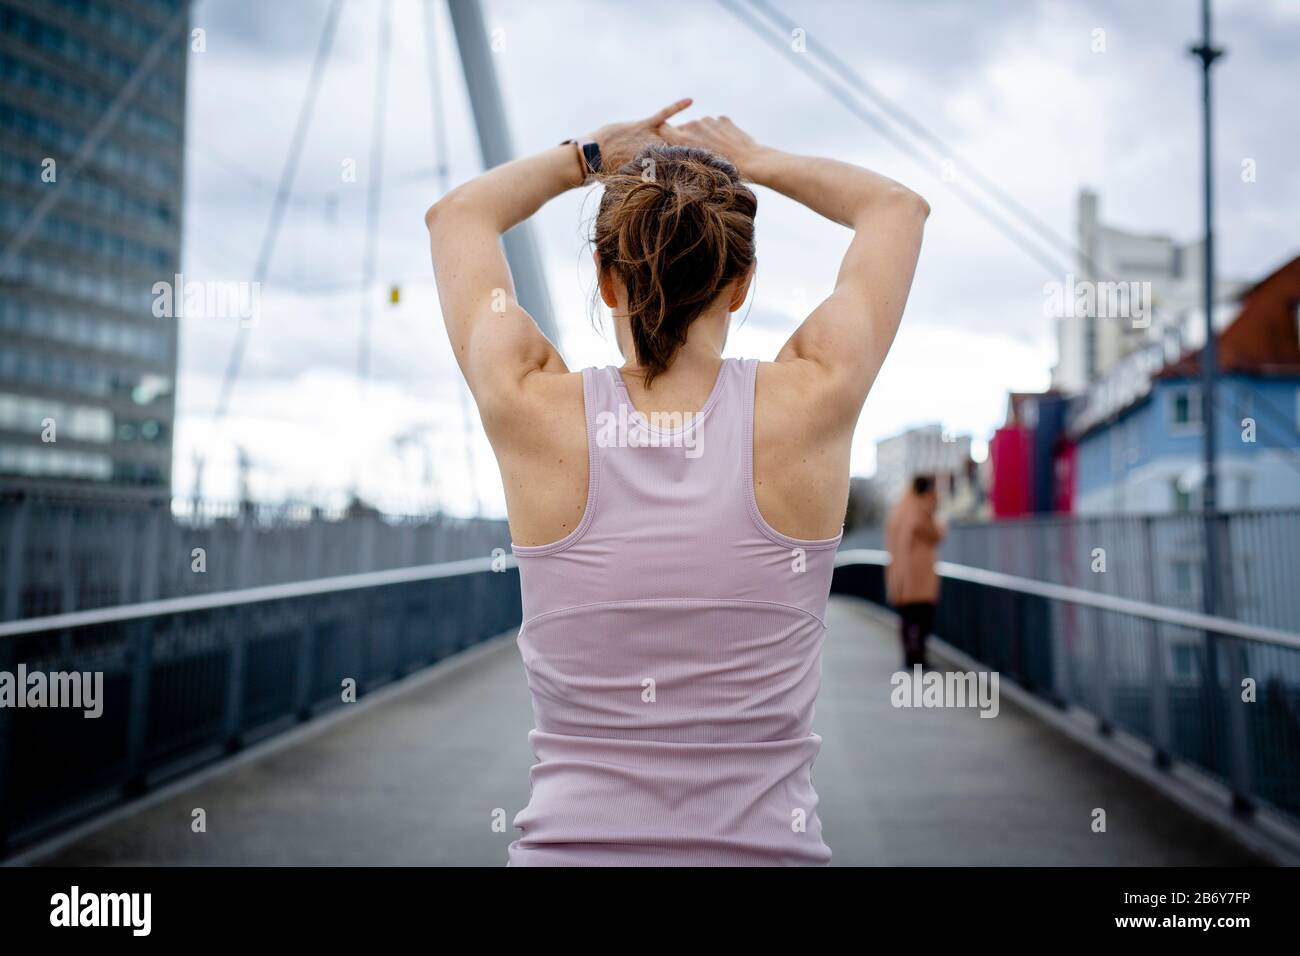 Aufnahme einer Sportlerin, die sich bereit macht für ein workout in der Stadt. Scatto di un atleta che si prepara per un allenamento in città. Foto Stock